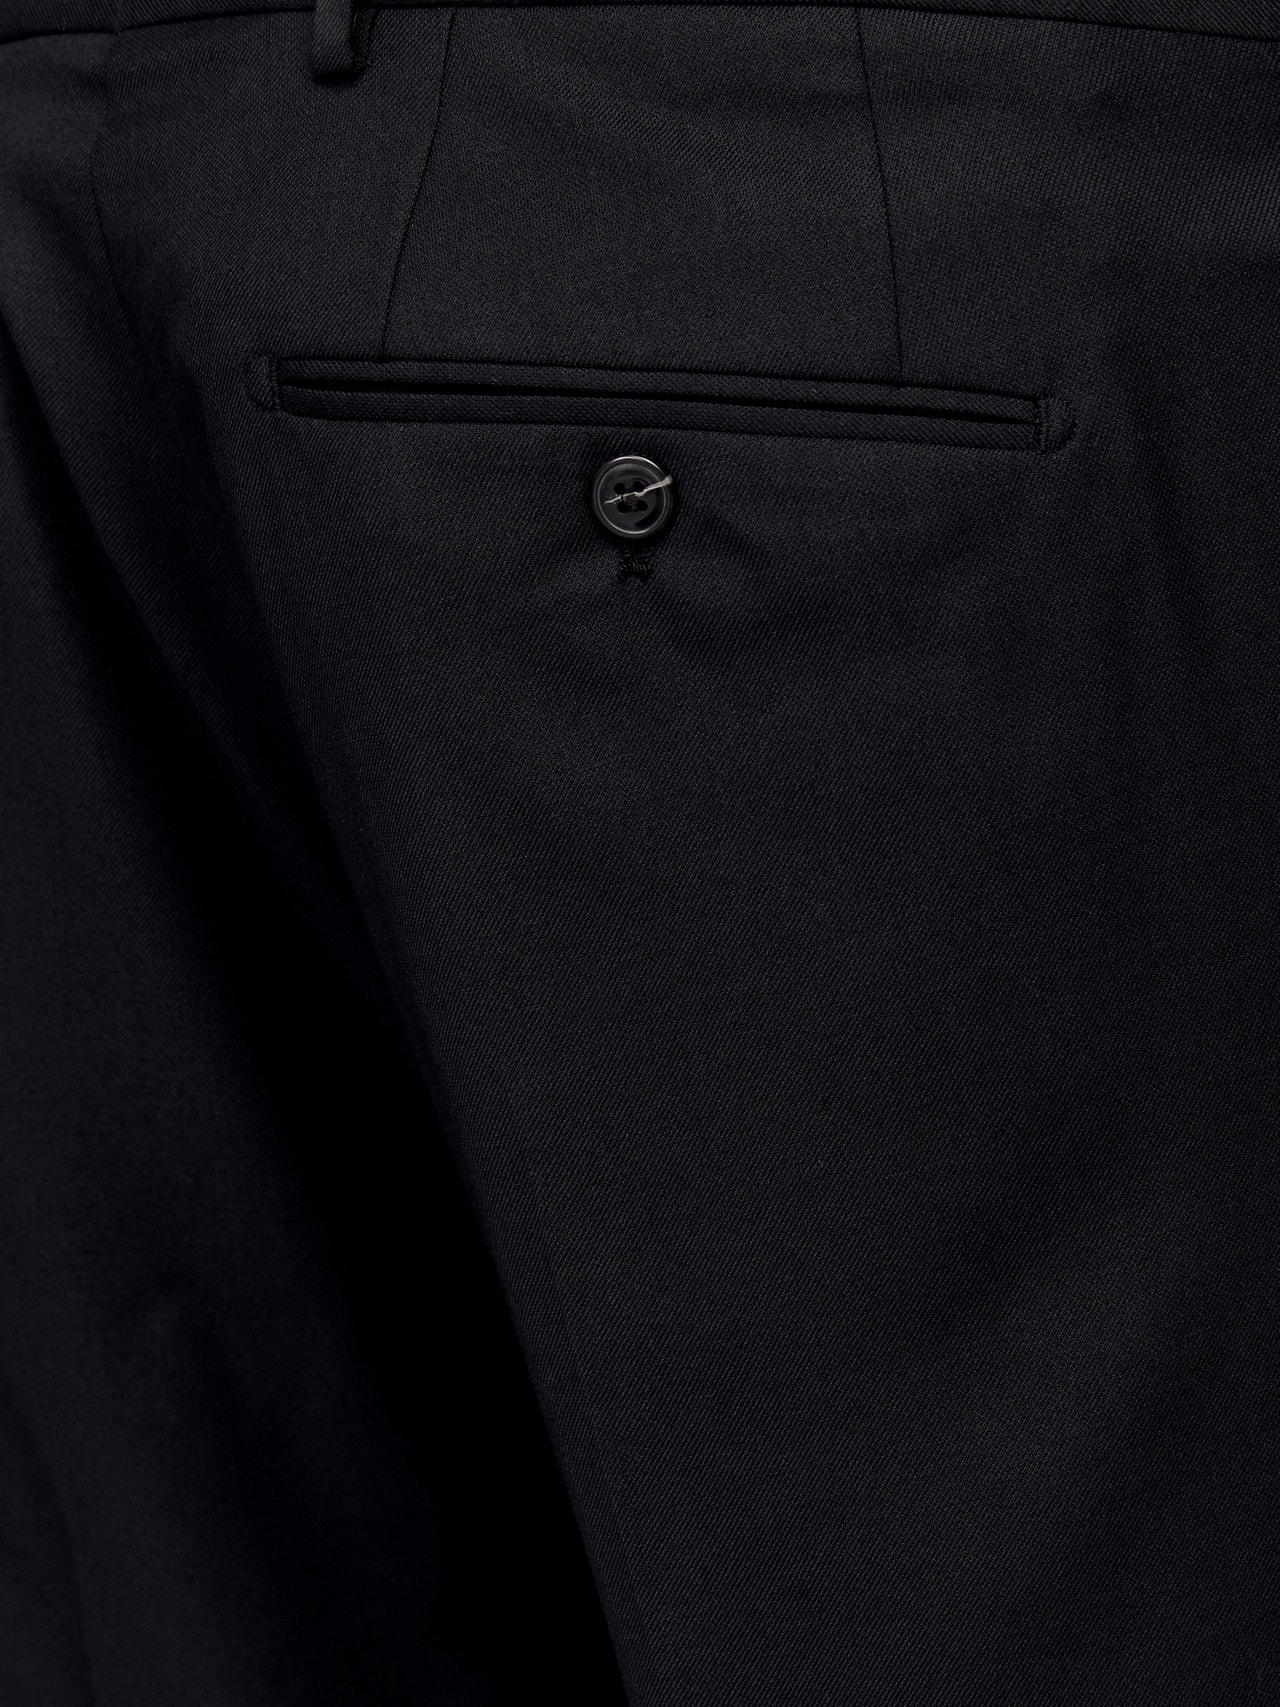 Jack & Jones Plus Size Slim Fit Kostiuminės kelnės -Black - 12263989